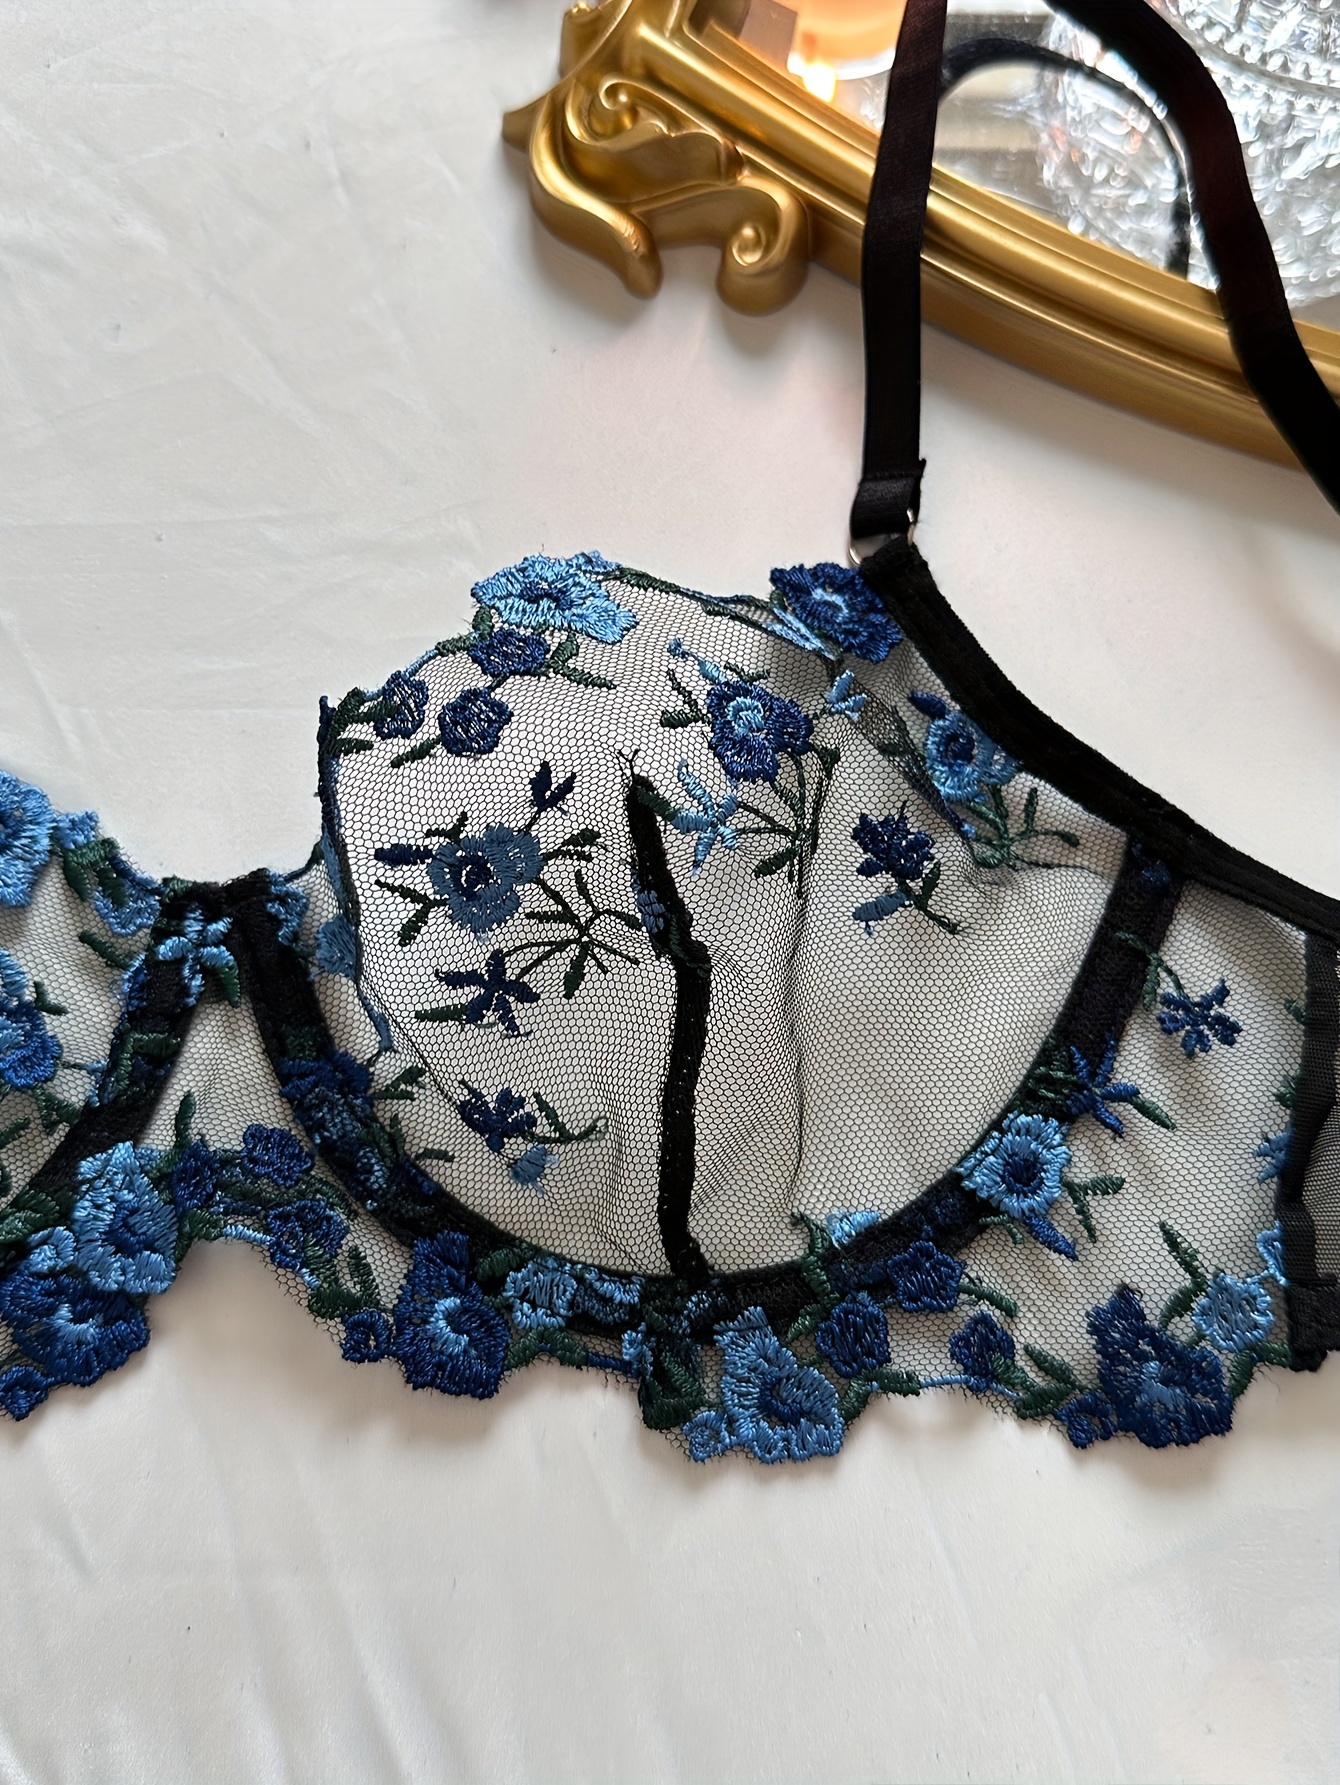 NWT Bra 40C Blue Underviews Lace Cotton Embroidery Floral Plus